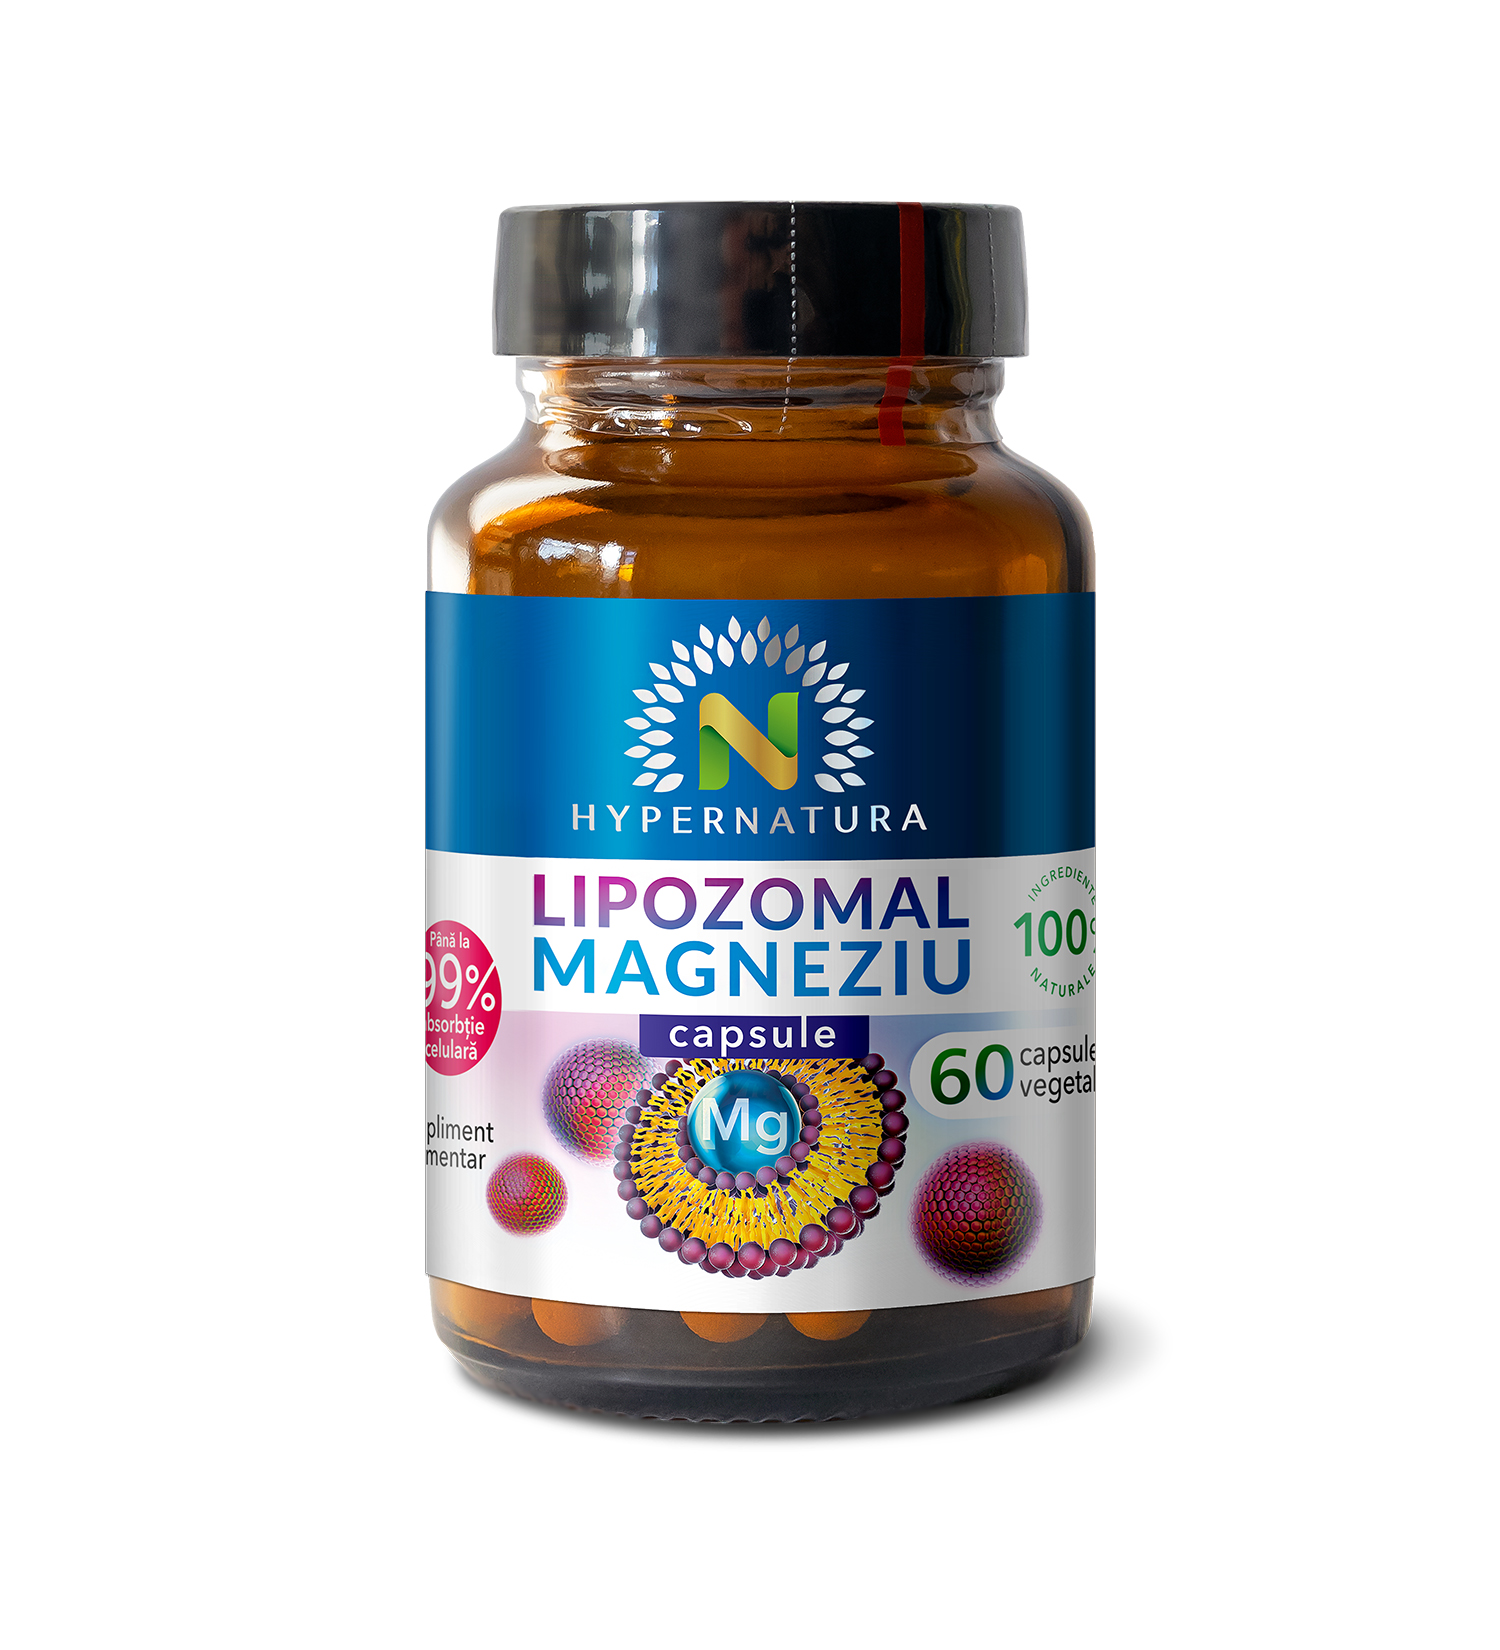 Lipozomal Magneziu capsule – pentru santatatea cardiovasculara a oaselor si muschilor – 60 cps